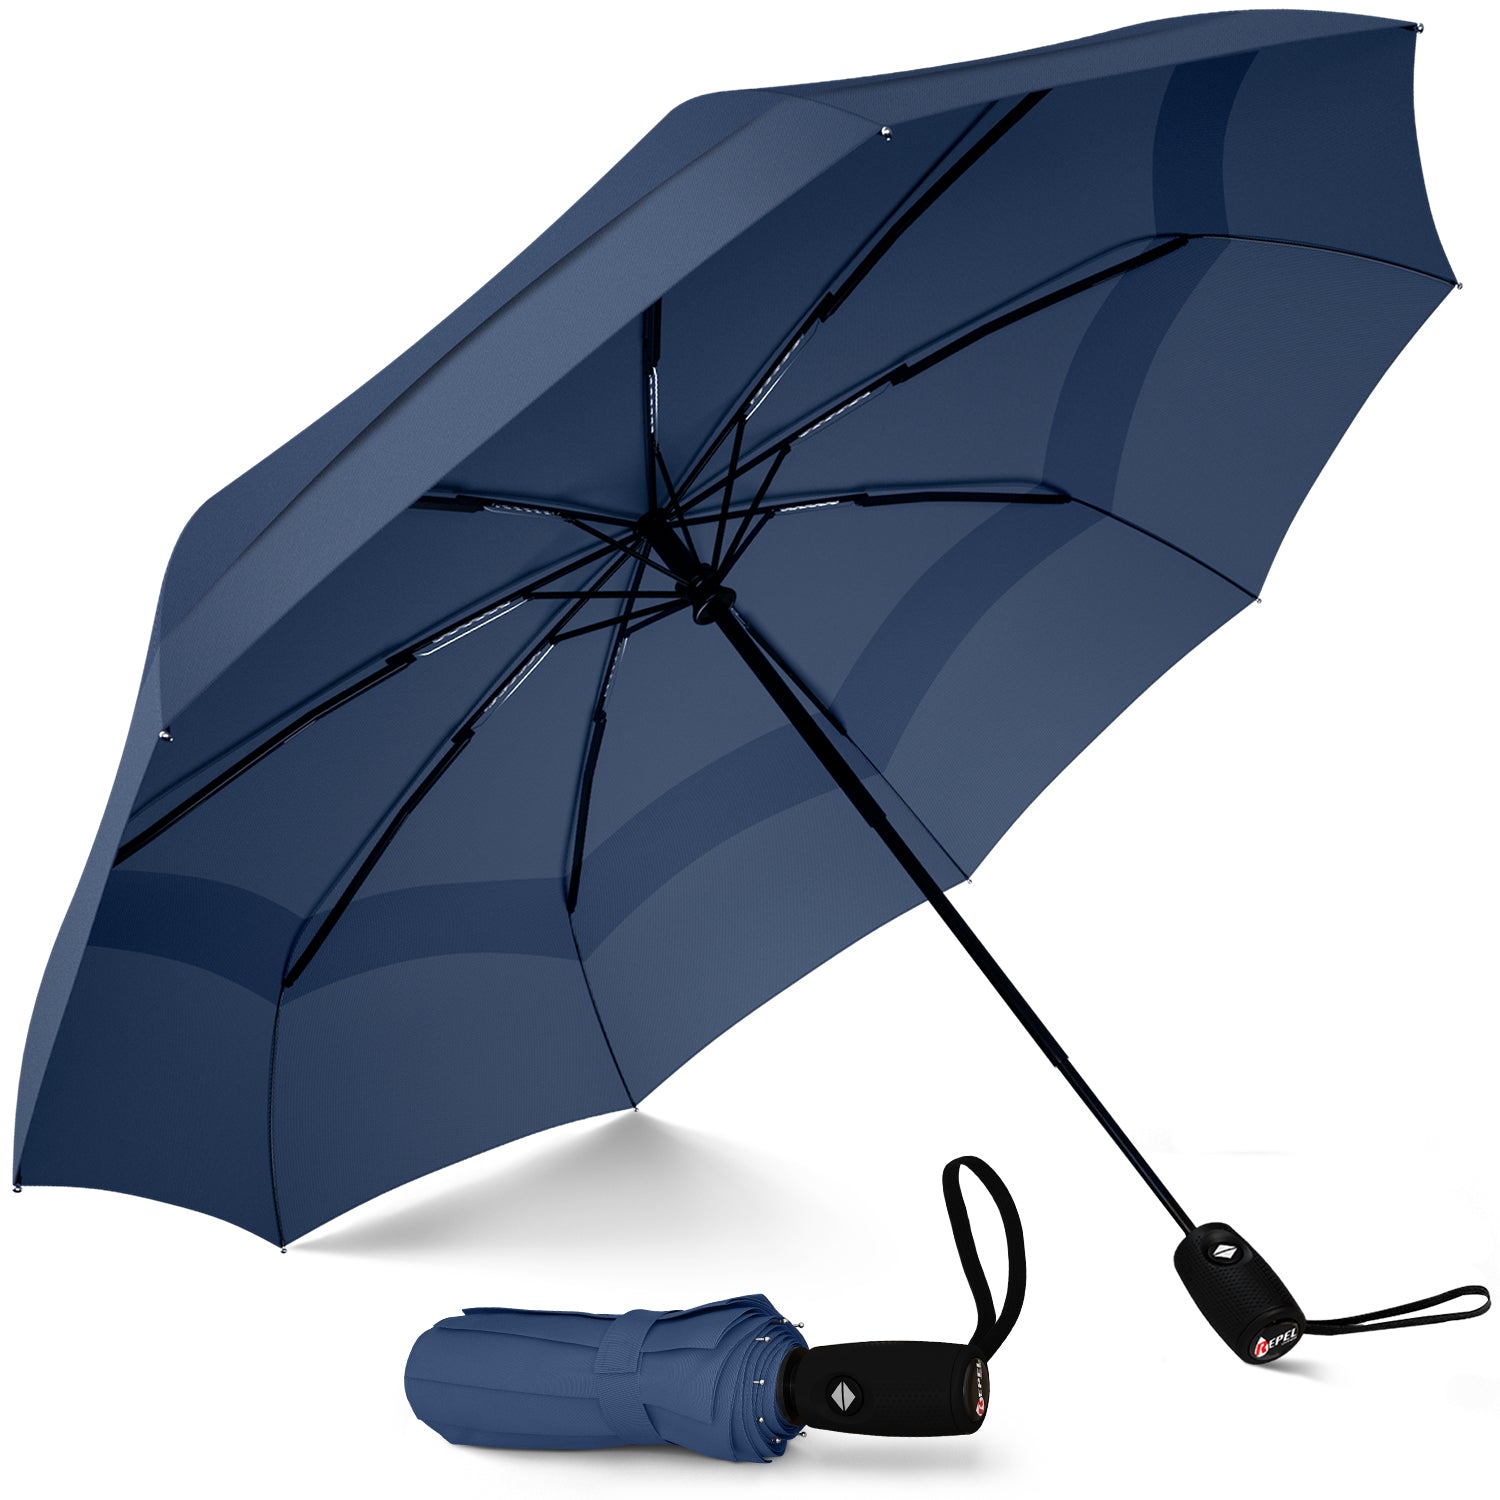 Windproof Travel Umbrella - Compact, Automatic, Navy Blue - Repel Umbrella